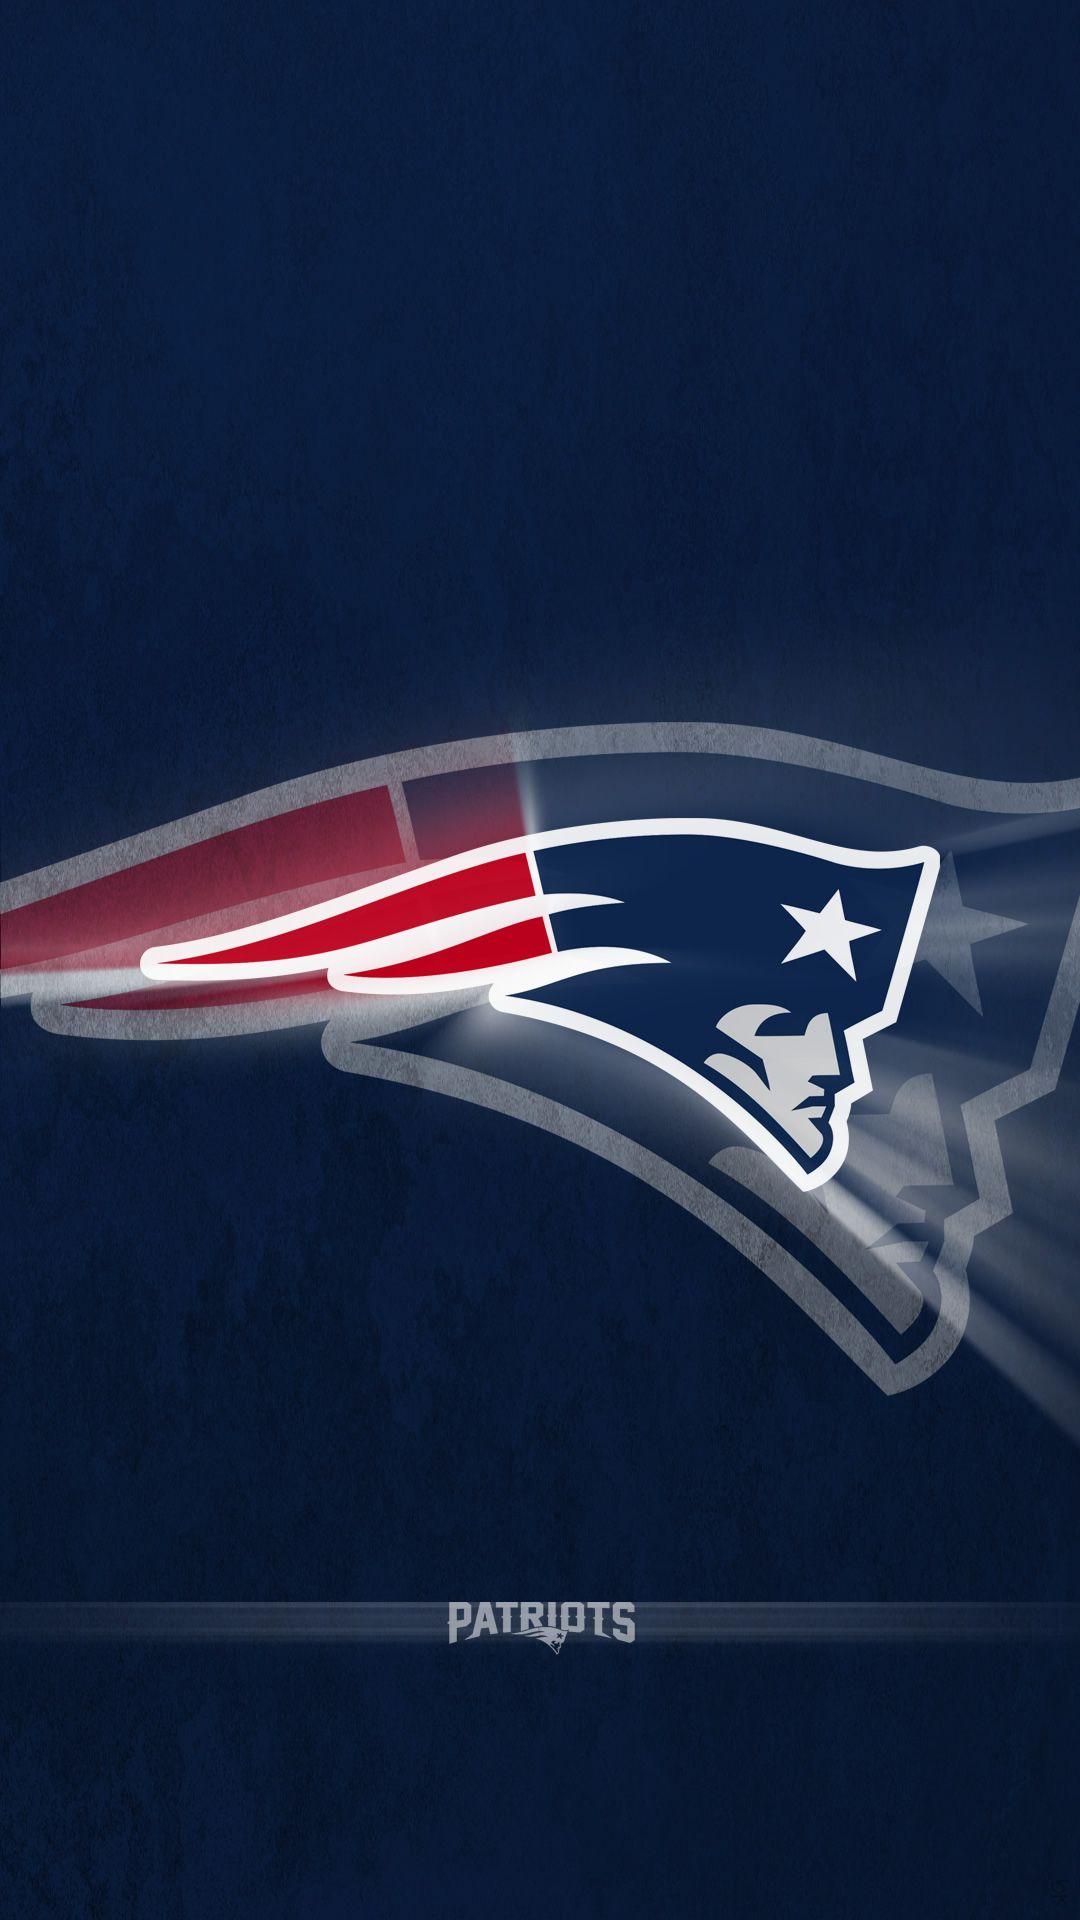 New Superbowl 2015 or Superbowl XLIX wallpaper – New England Patriots